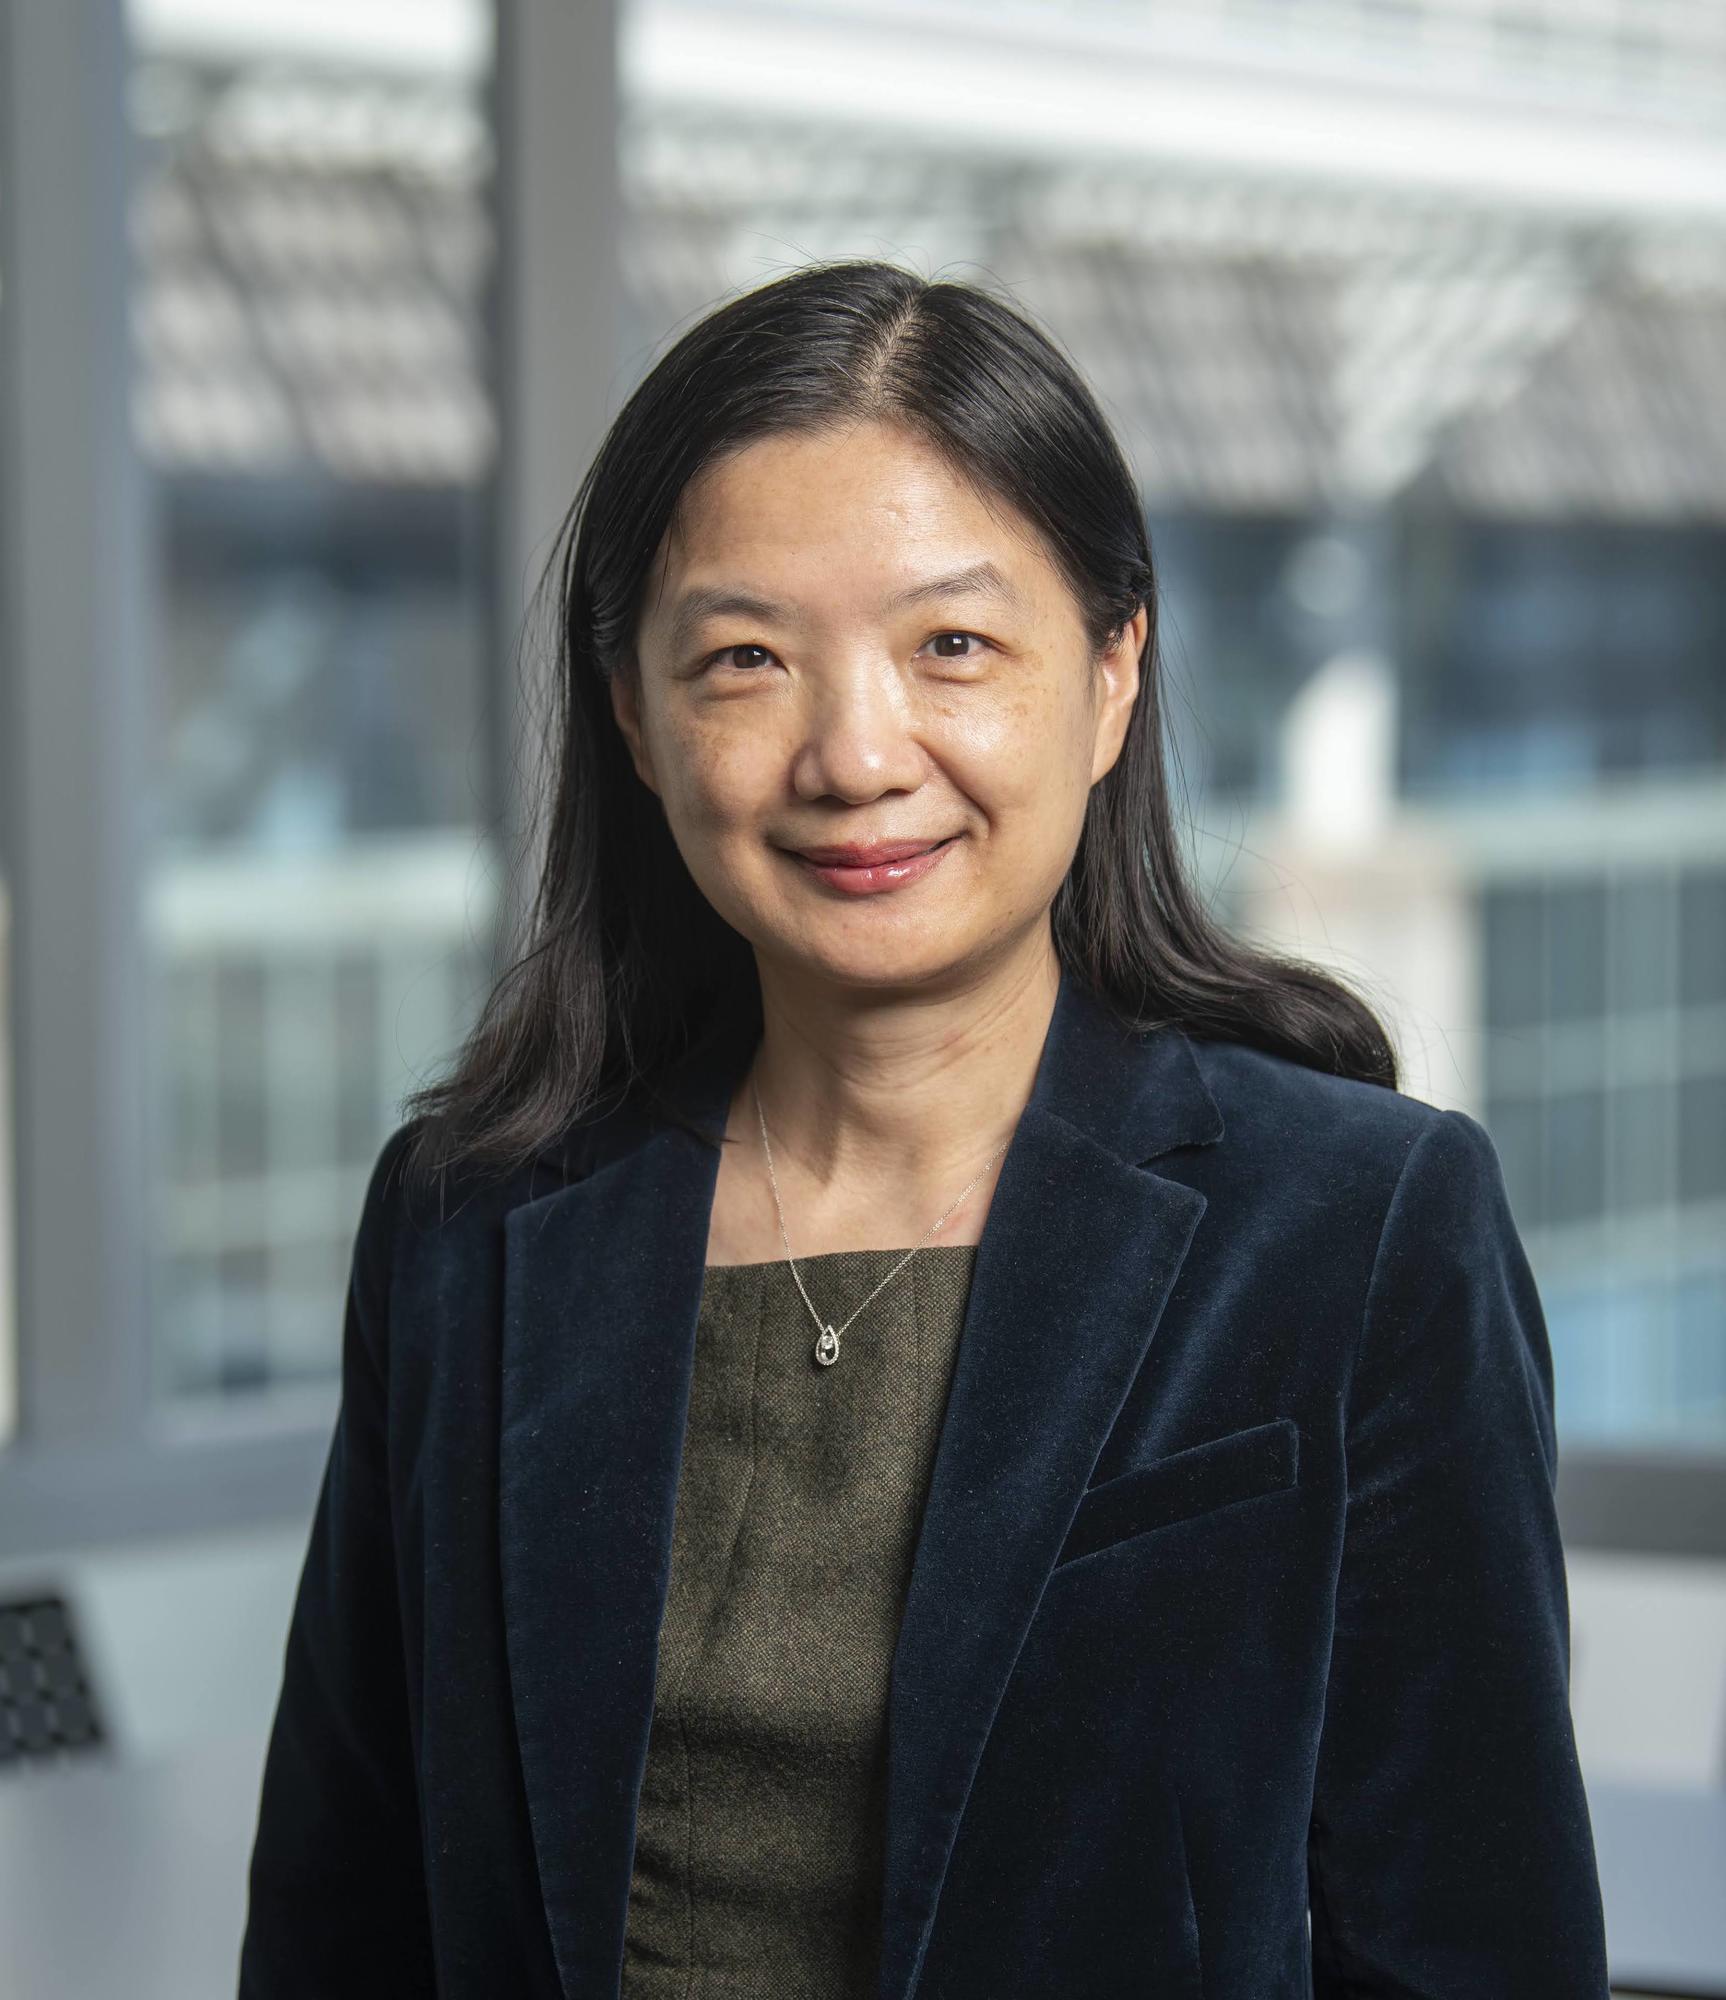 Dr. Yingzi Yang